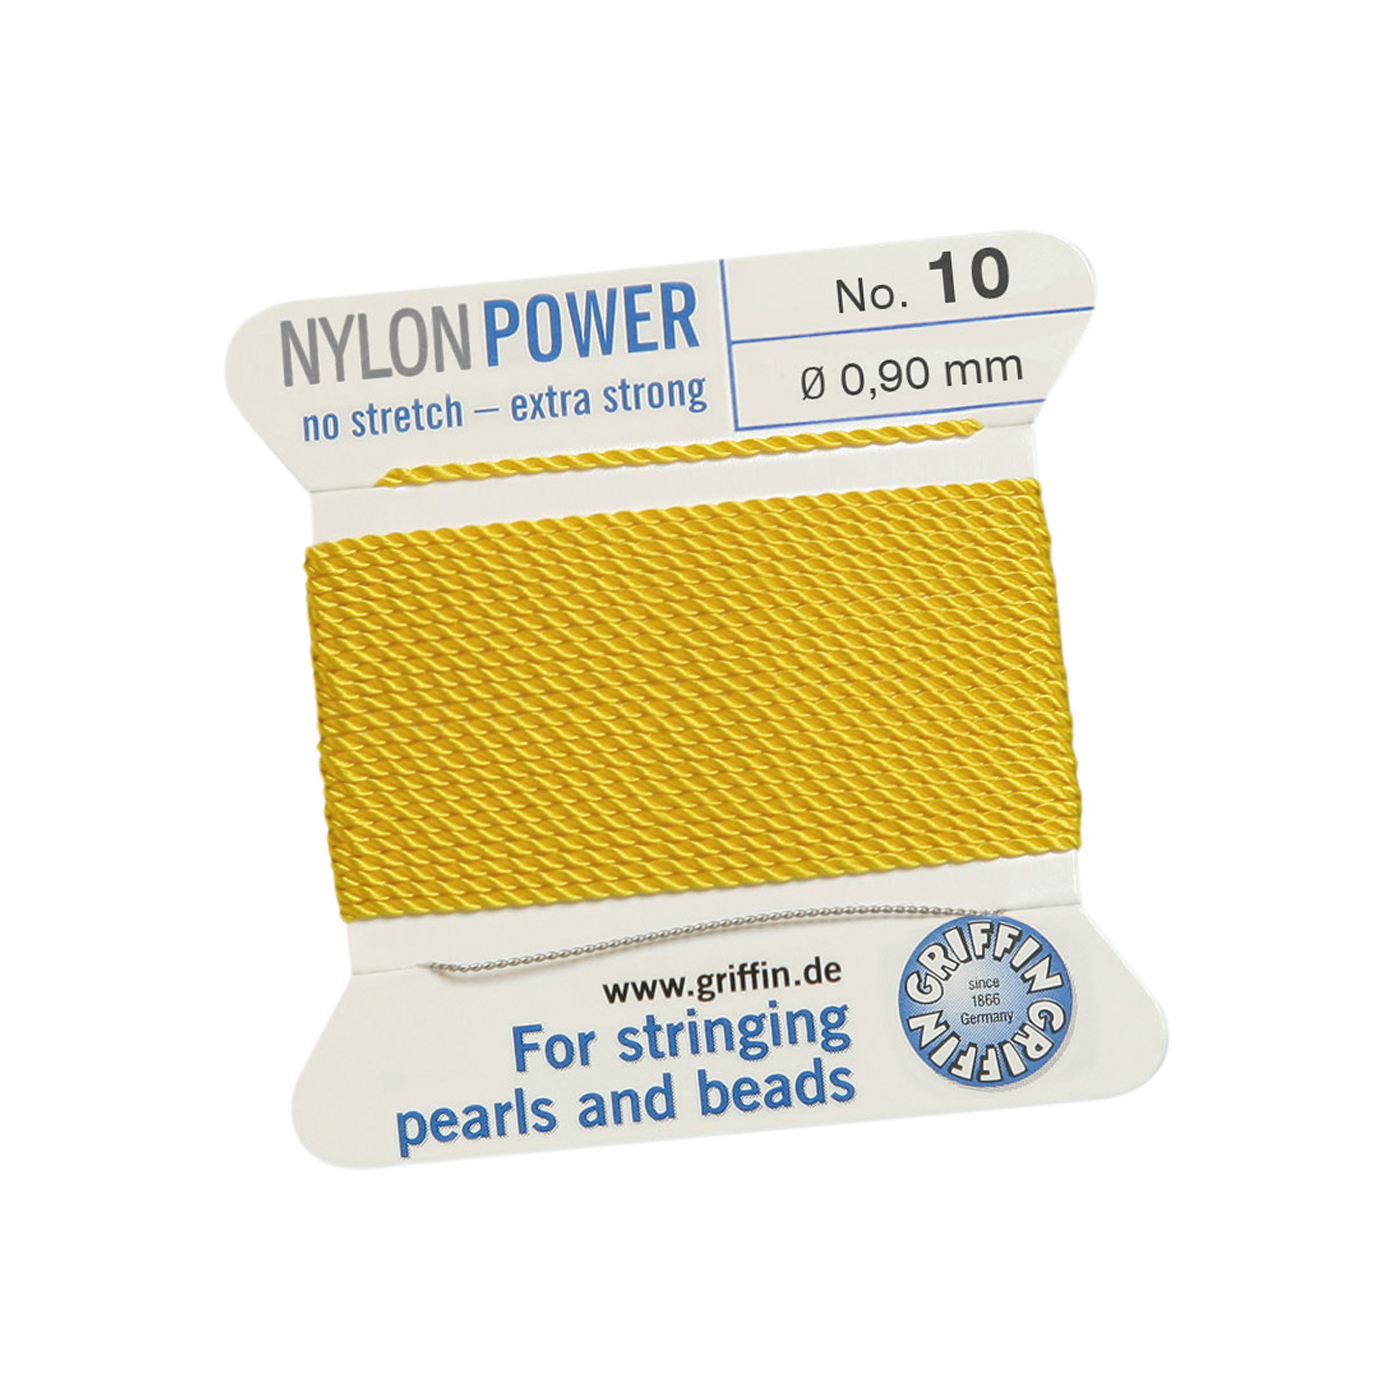 Bead Cord NylonPower, Light Yellow, No. 10 - 2 m